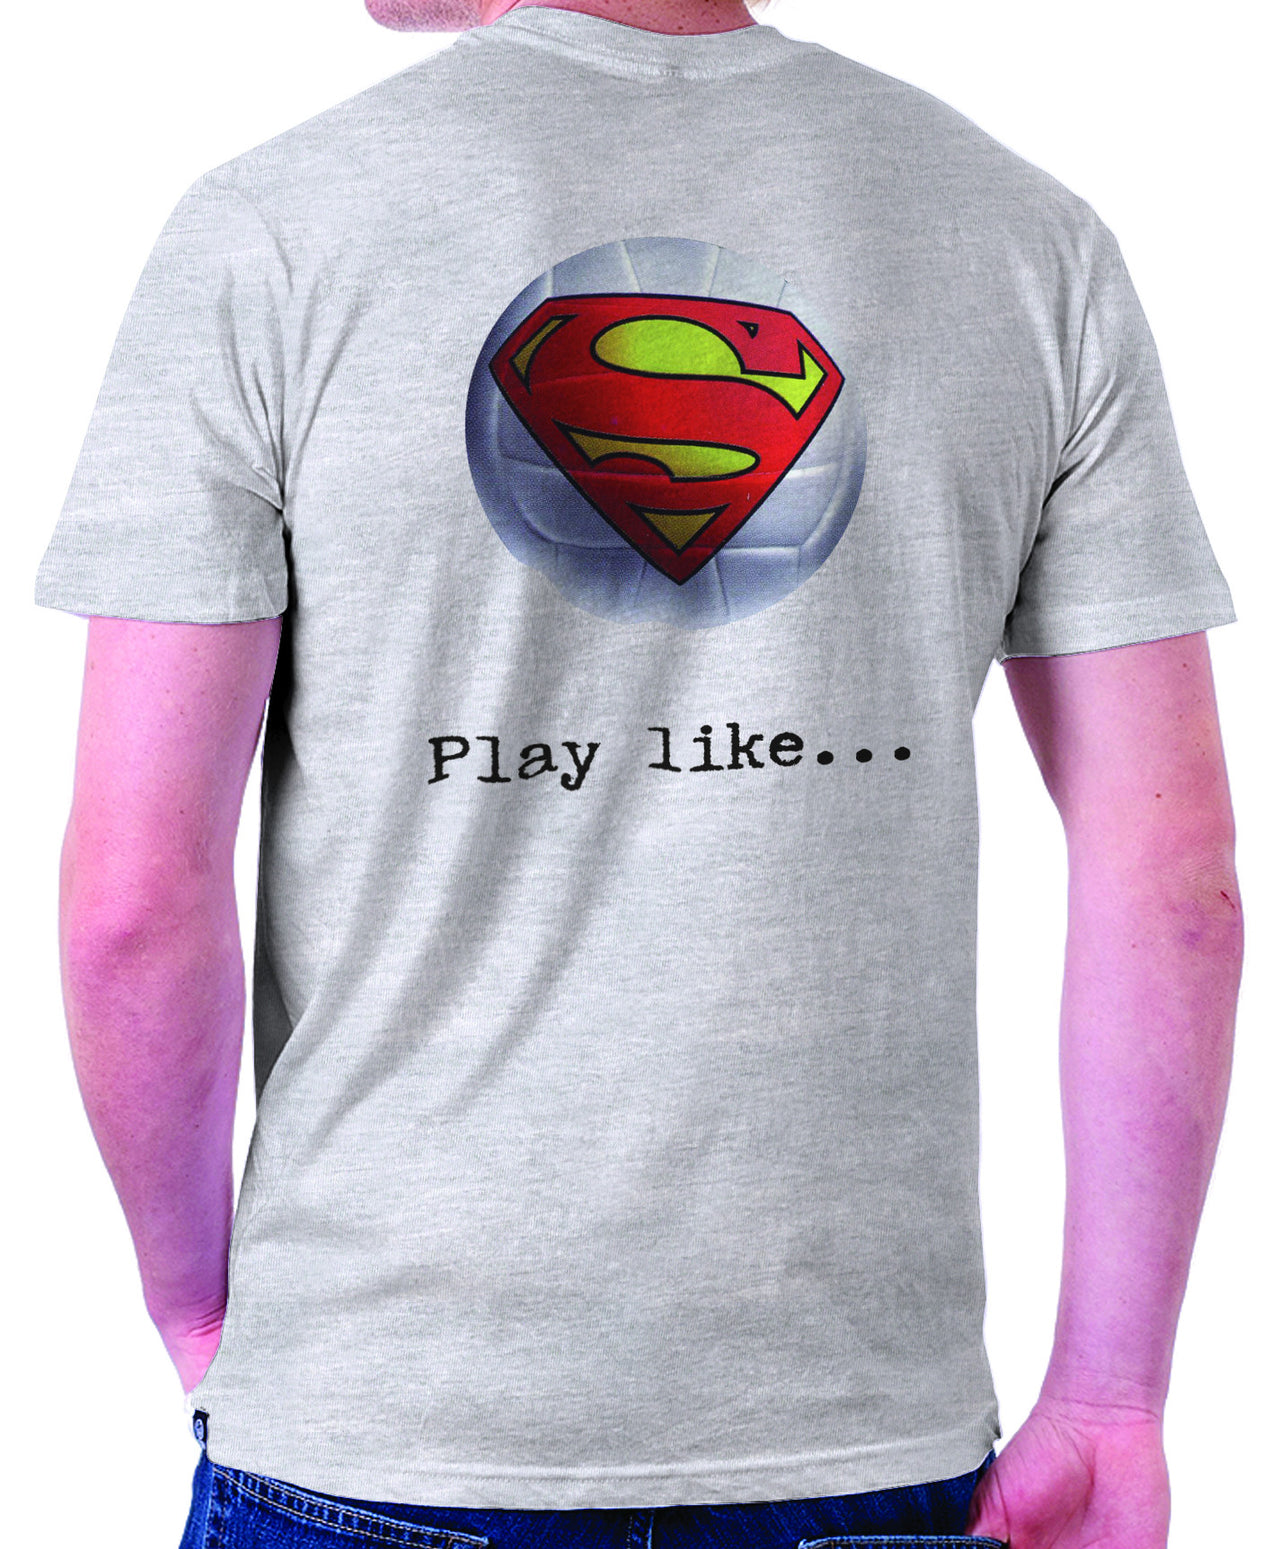 Superman 'Play like' : Volleyball Logo on Ash Grey Colored Pocket Tshirt - TshirtNow.net - 1